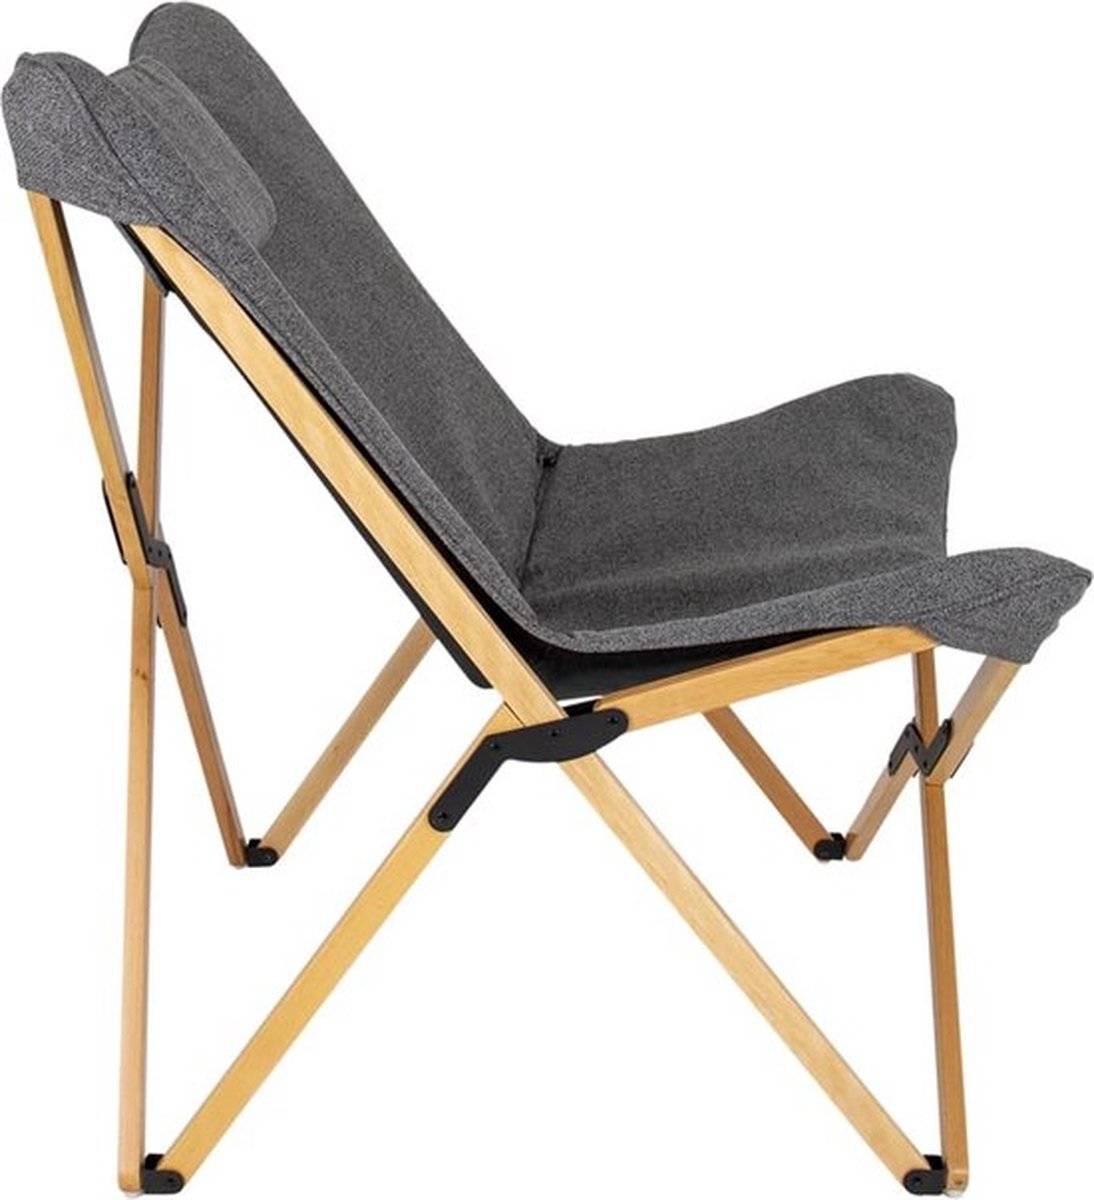  HUIOP Garden Rest Chair, Outdoor Camping Folding Chair